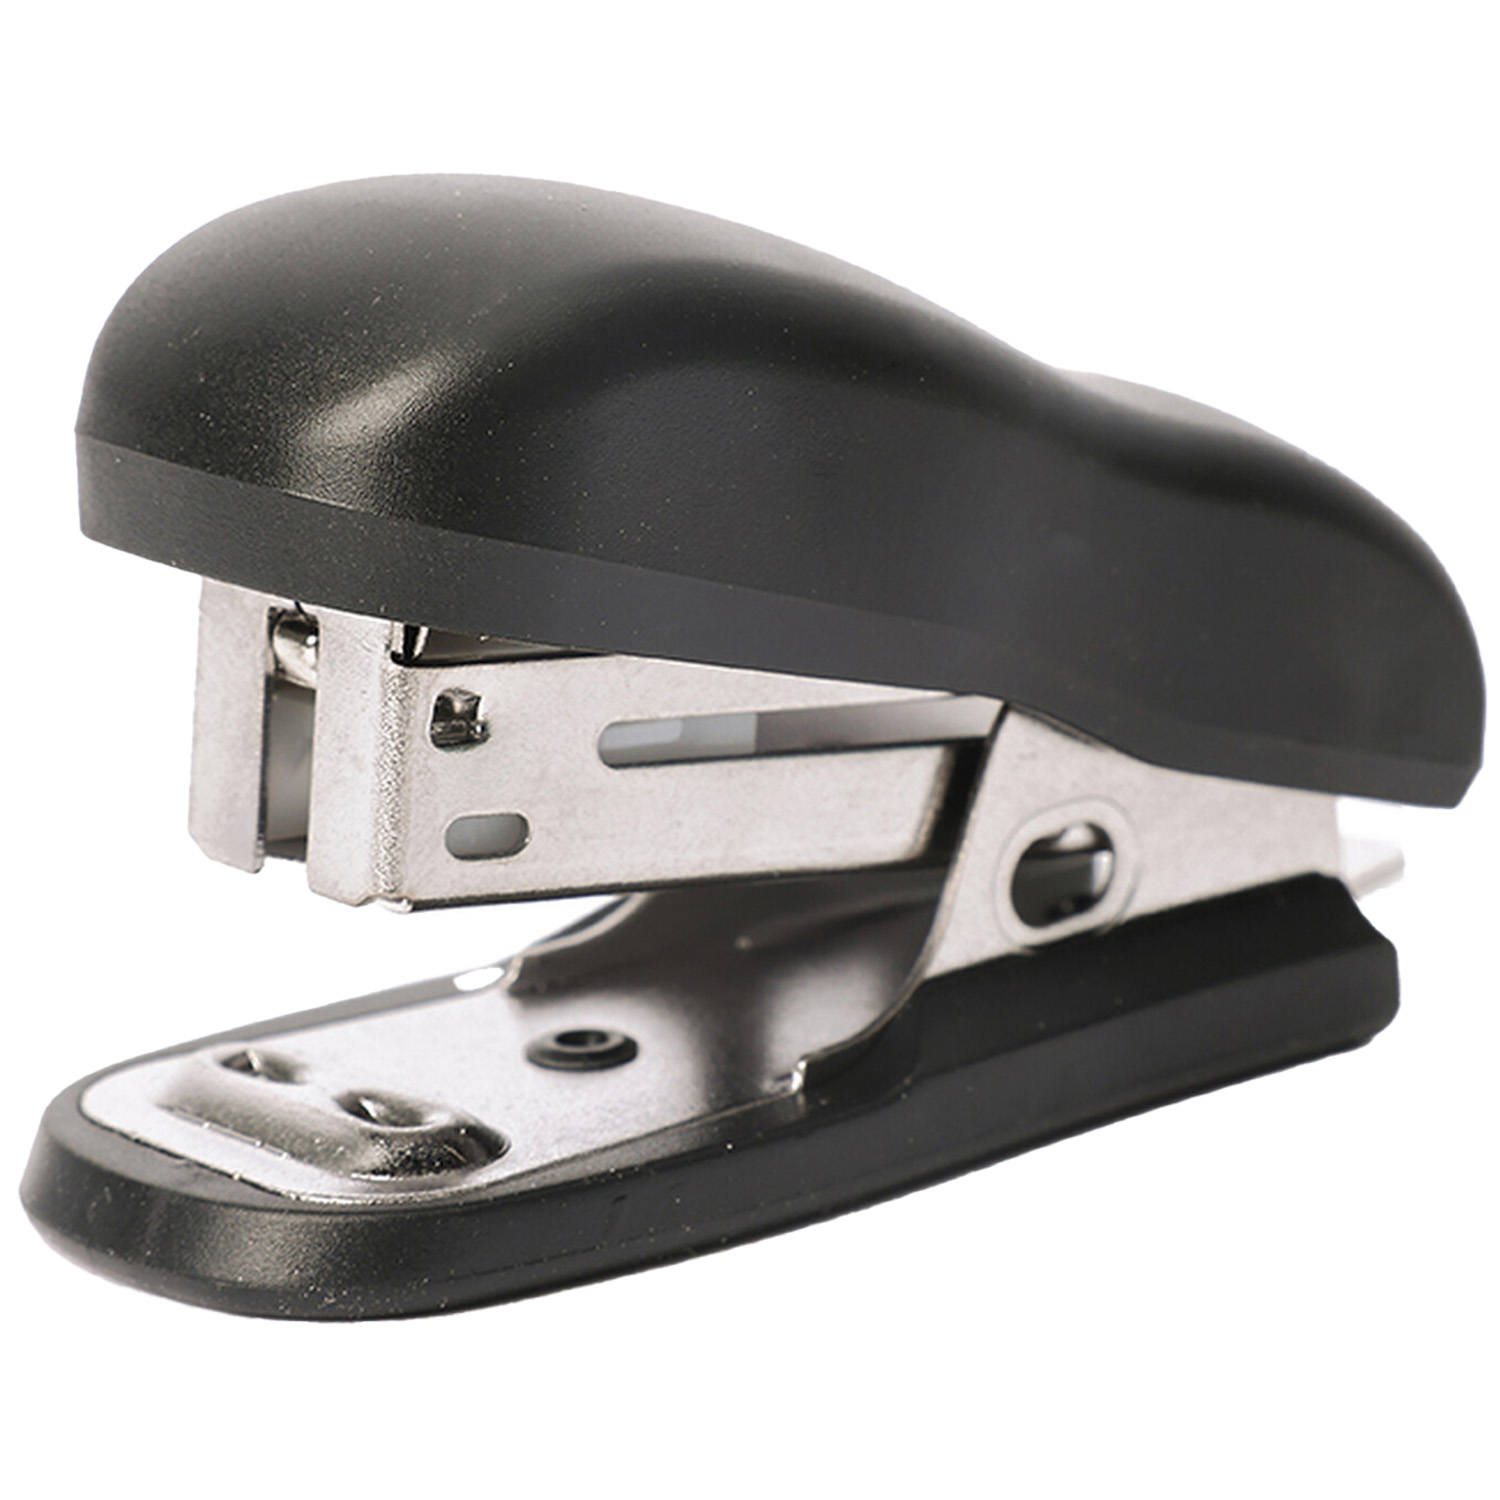 Mini Portable Stapler - Black Image 1